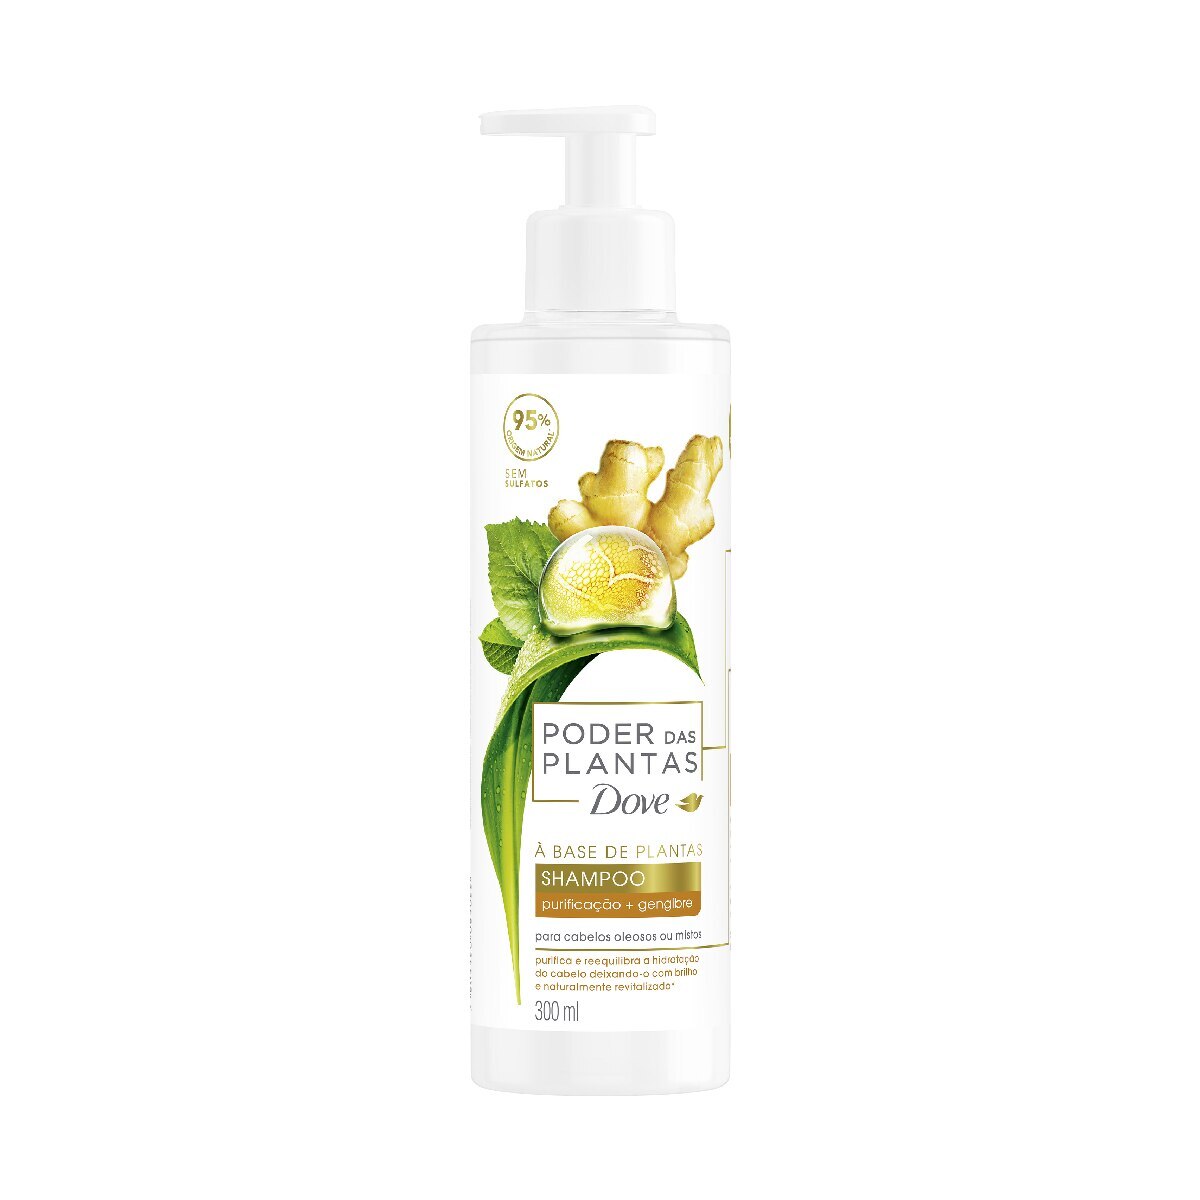 Shampoo Dove Poder das Plantas Purificacao + Gengibre 300mL